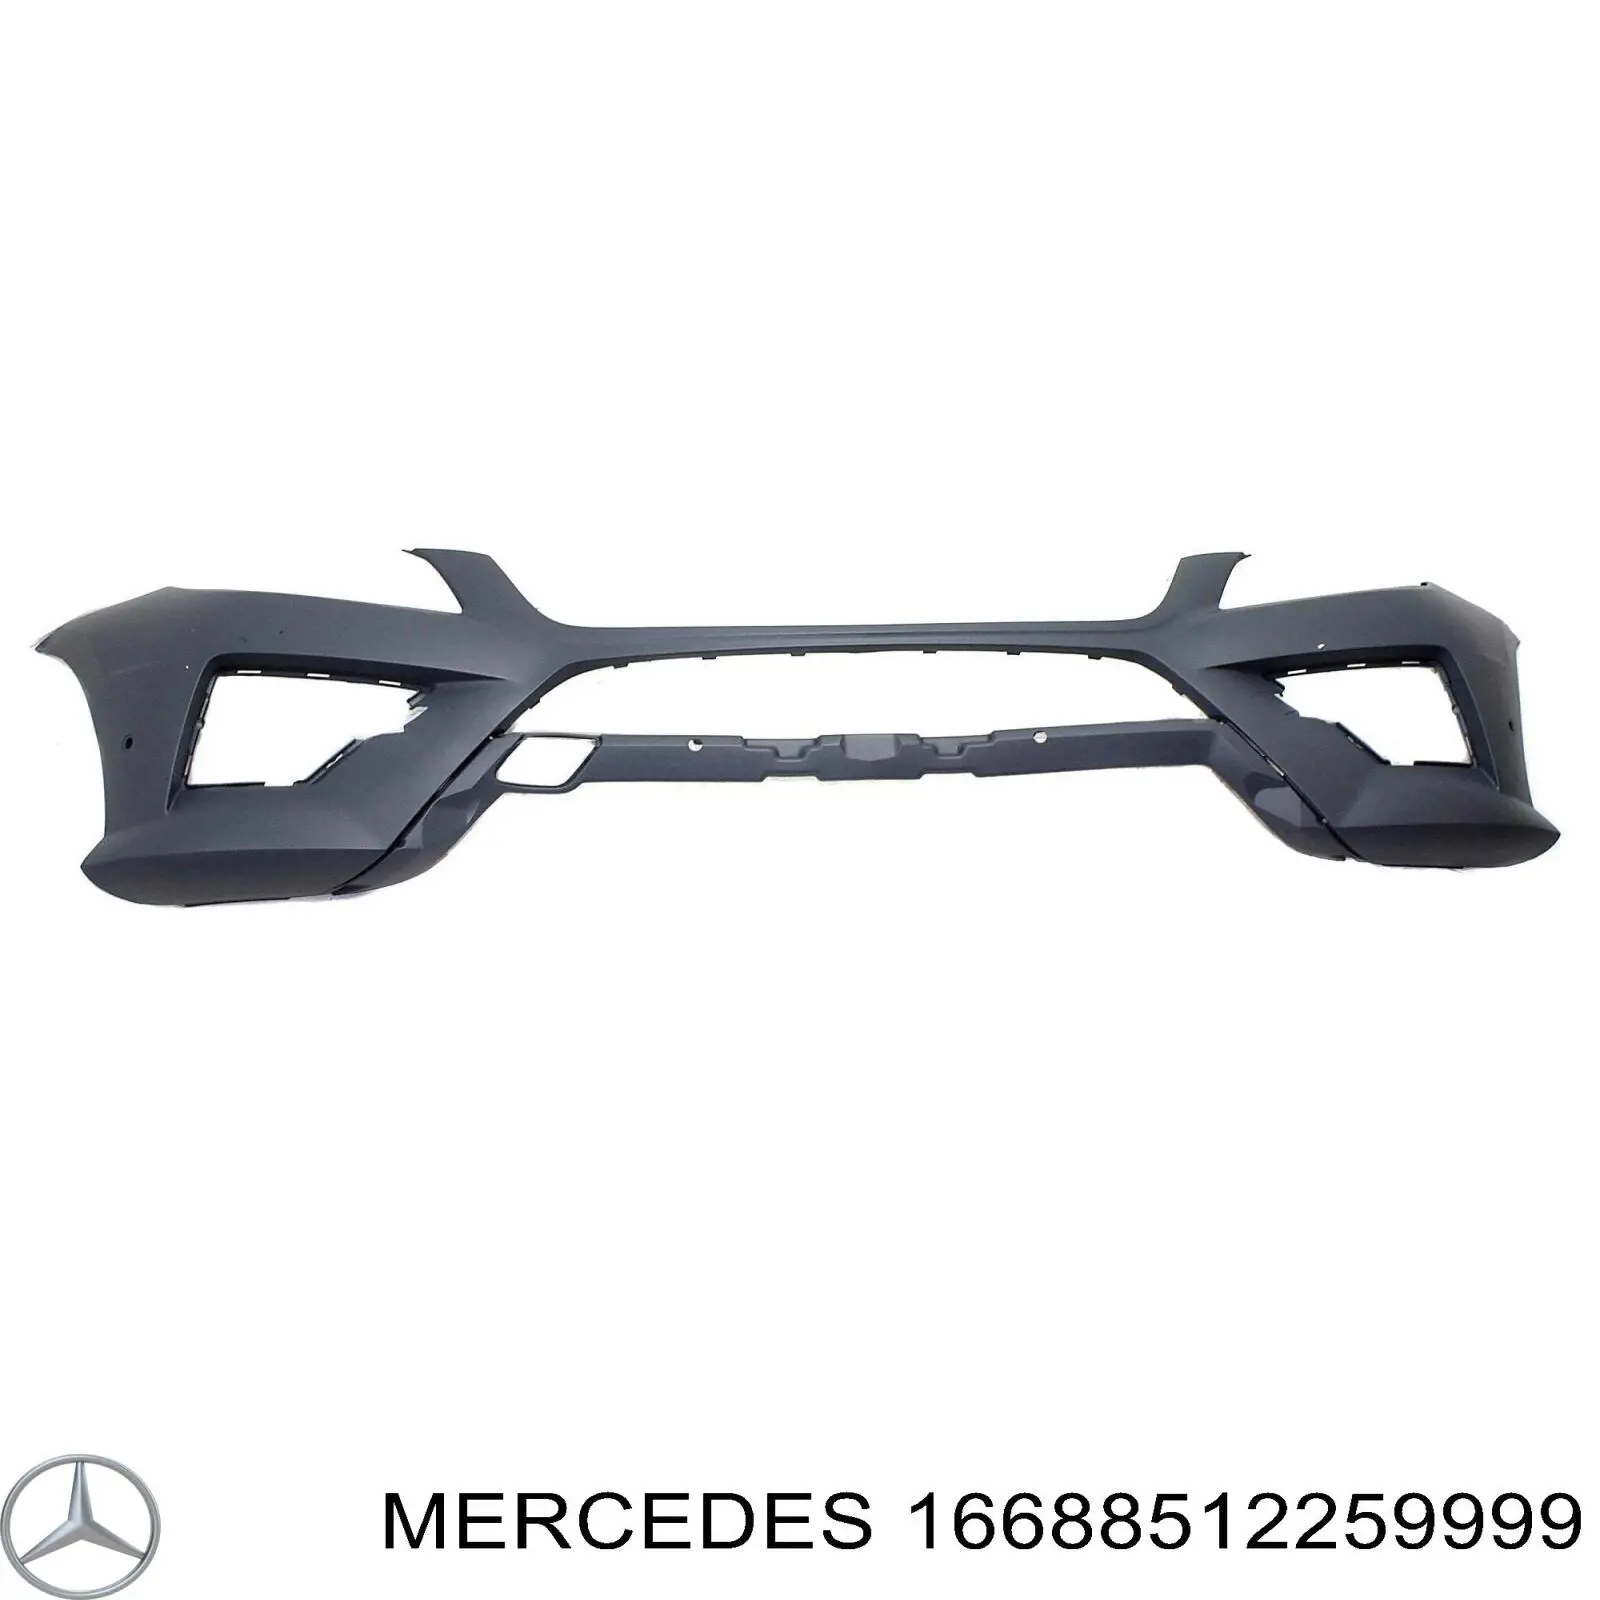 Передний бампер на Mercedes ML/GLE  W166